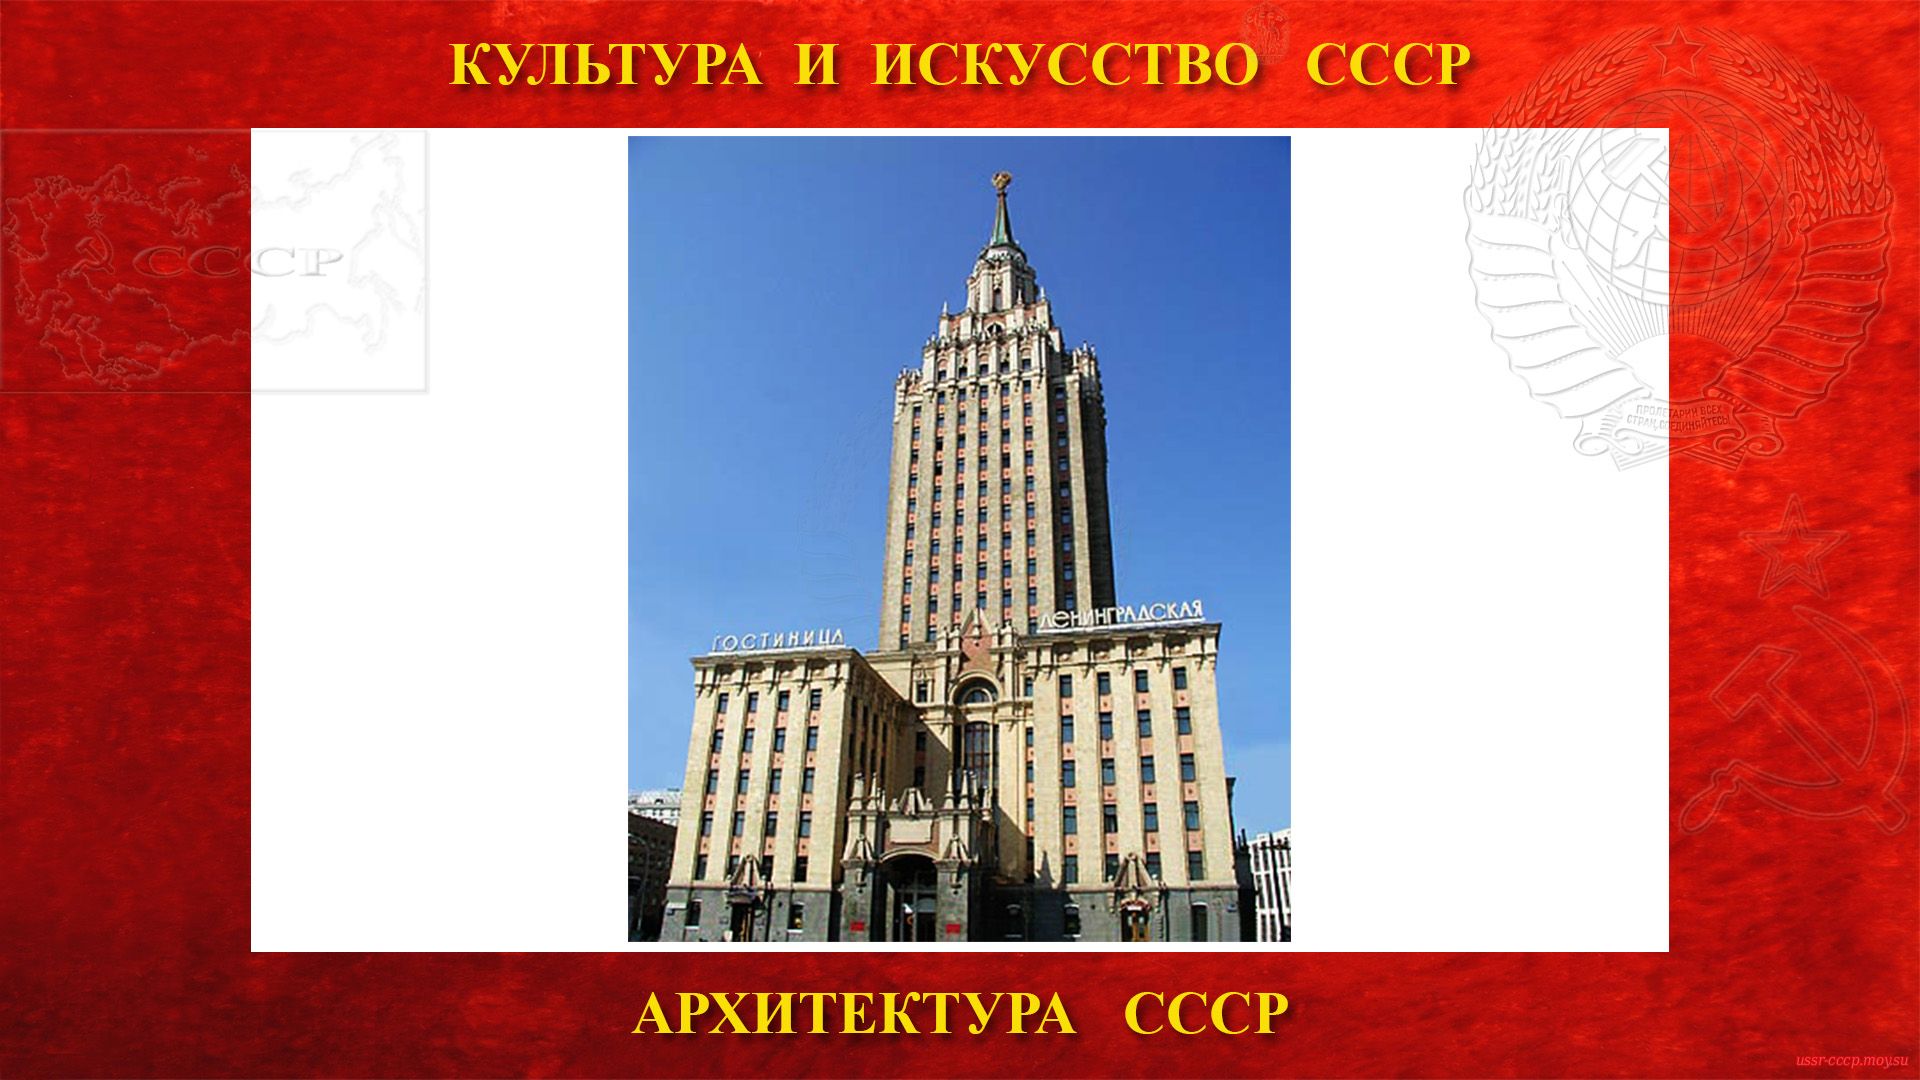 Карнизы в СССР — Архитектурный элемент